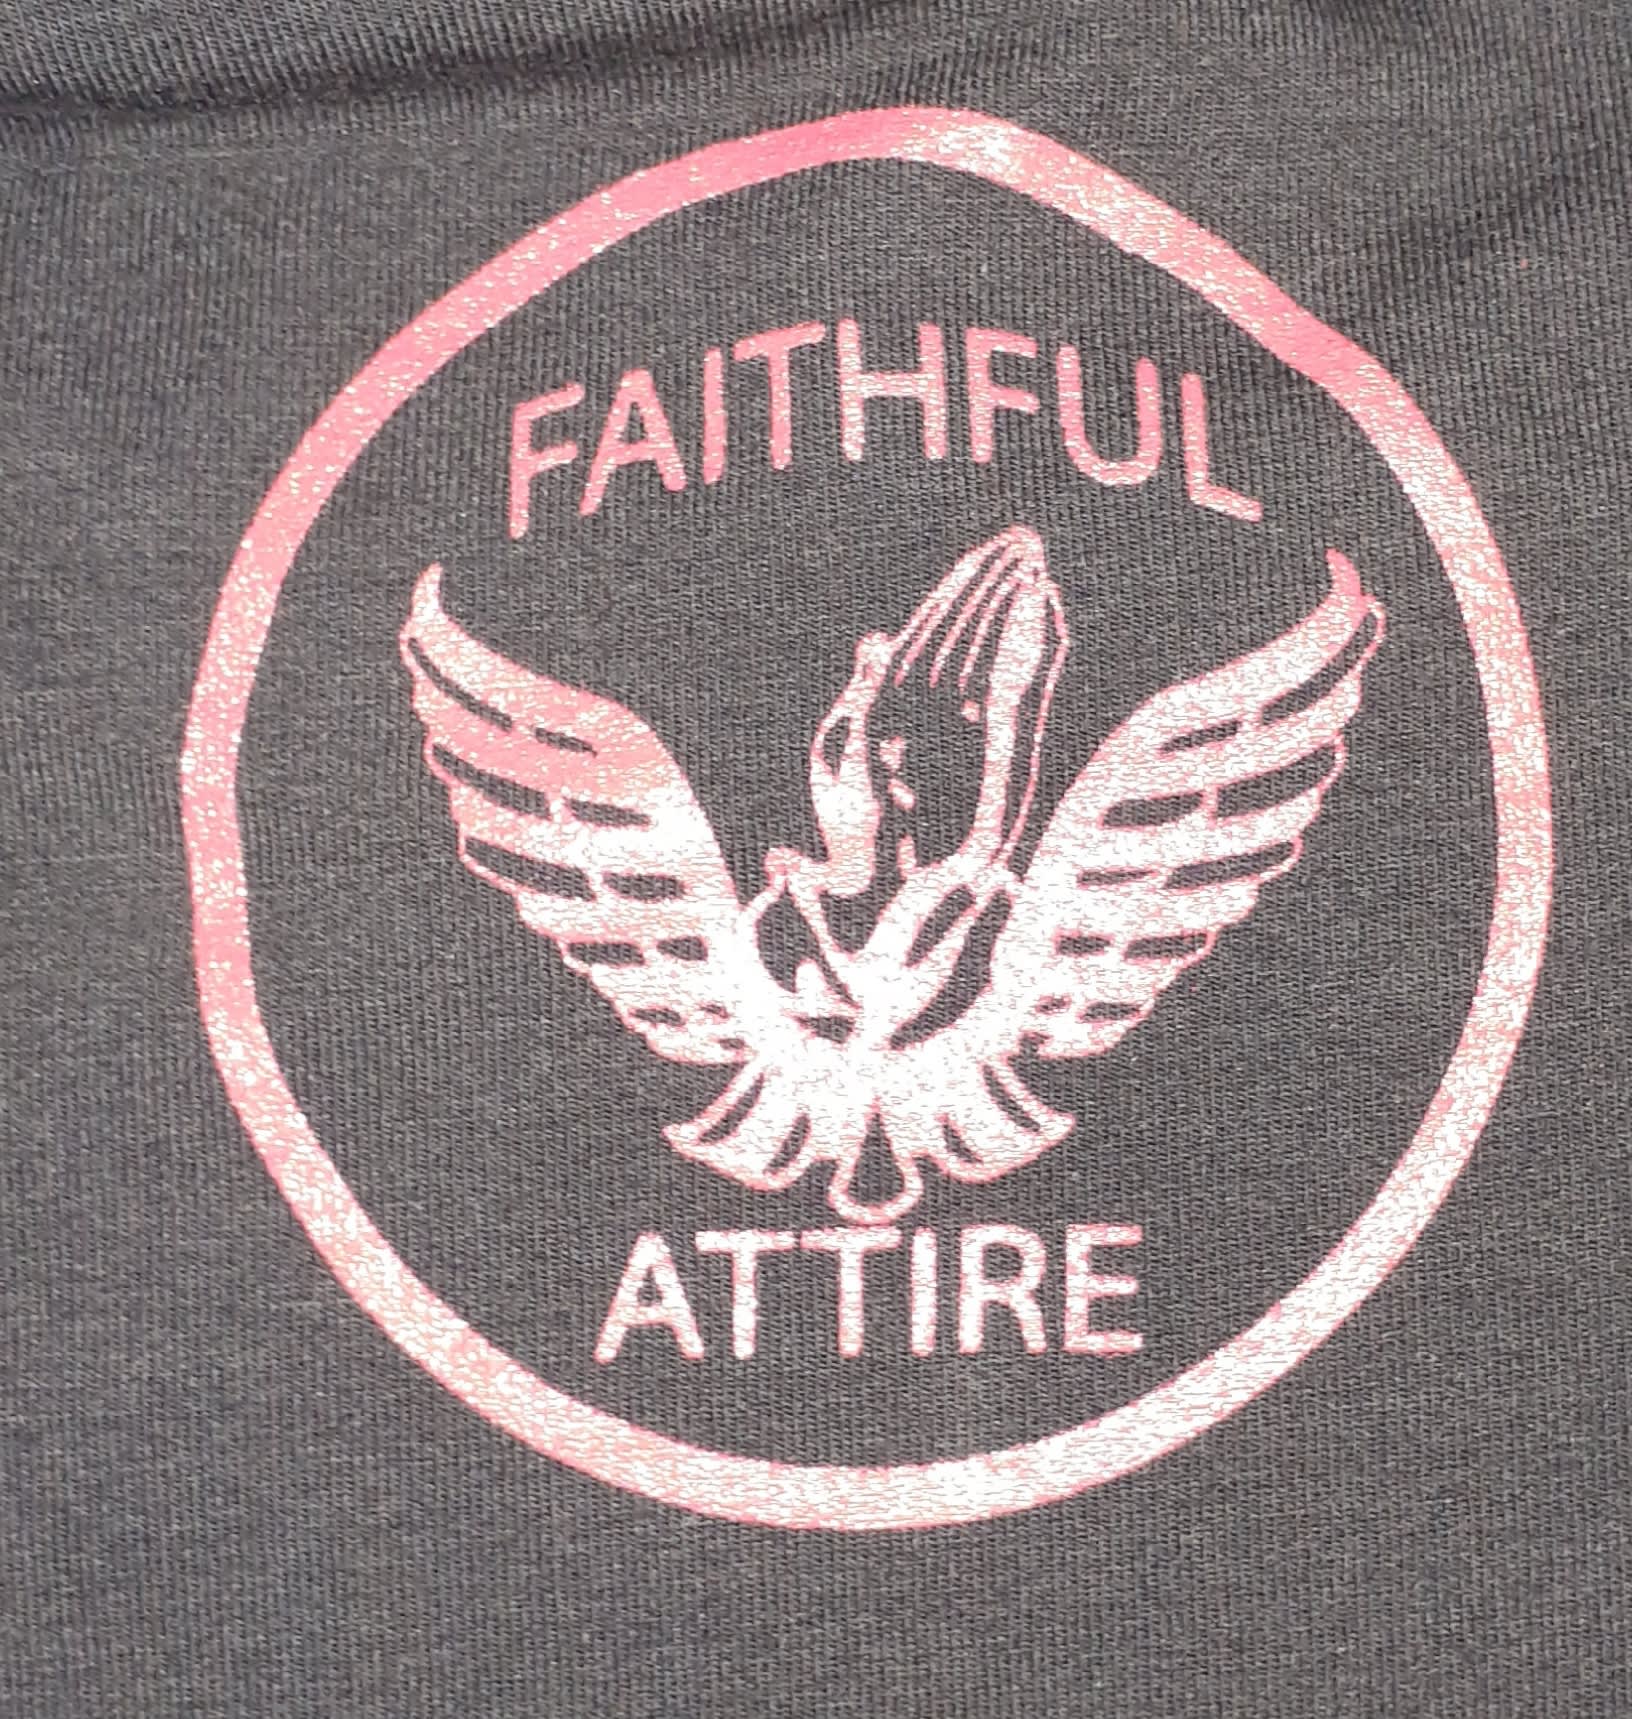 Faithful Attire Ink